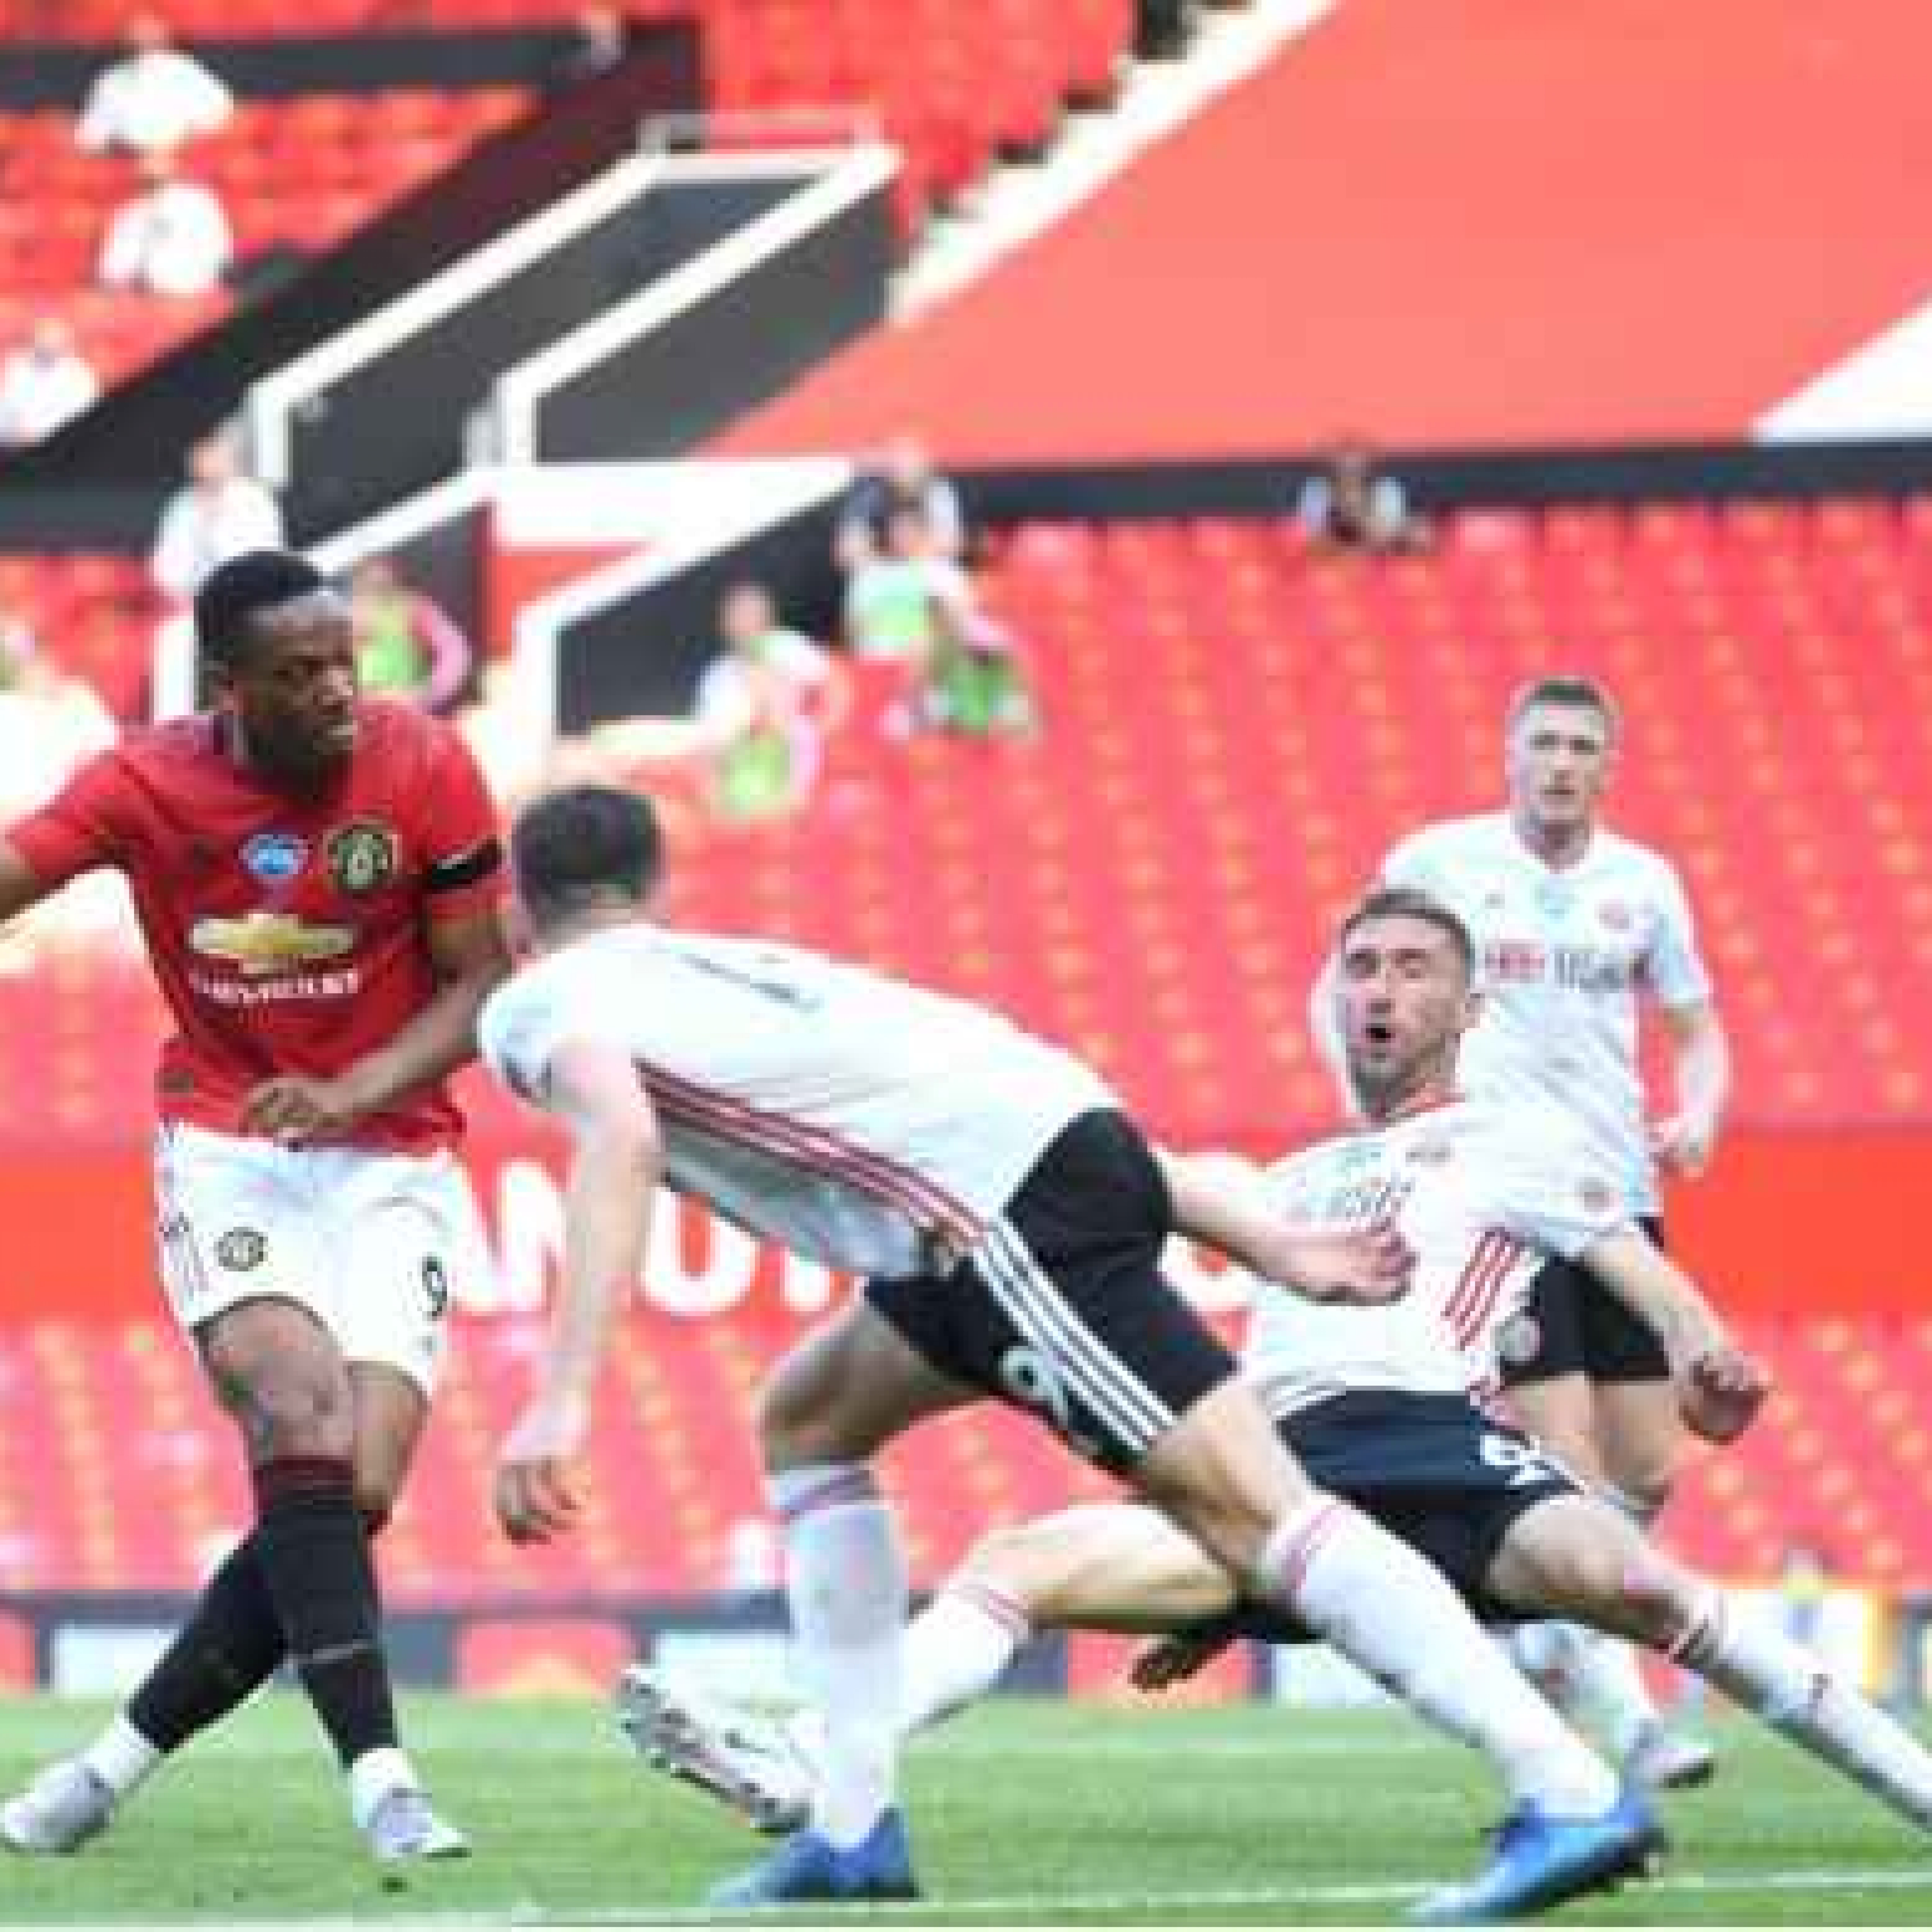 Hasil Liga Inggris 2020: Manchester United 3-0 Sheffield United, Martial Menangkan Setan Merah